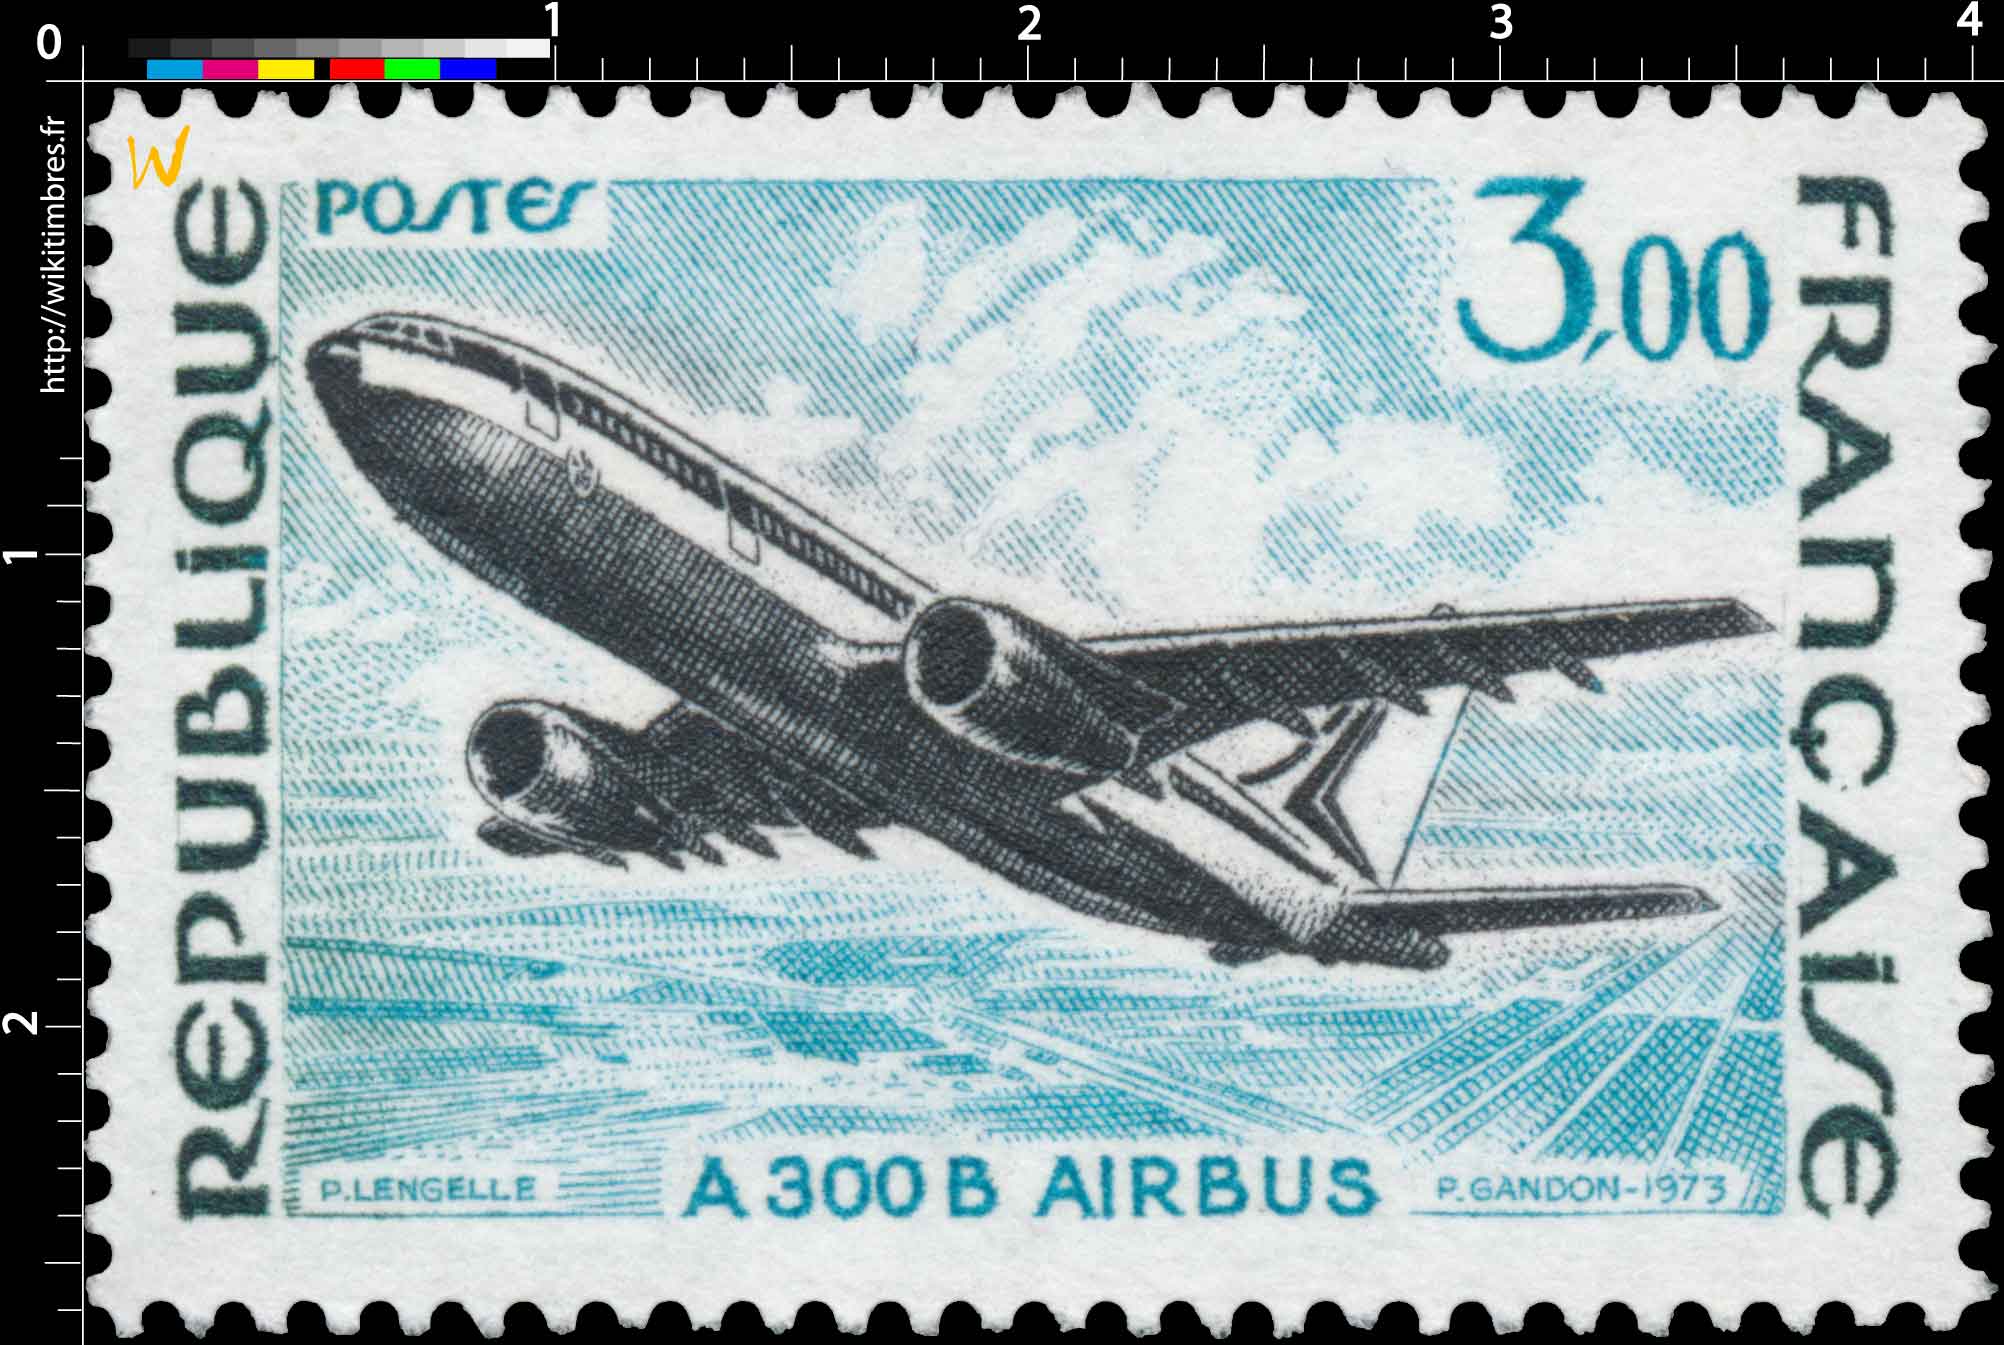 1973 A 300 B AIRBUS